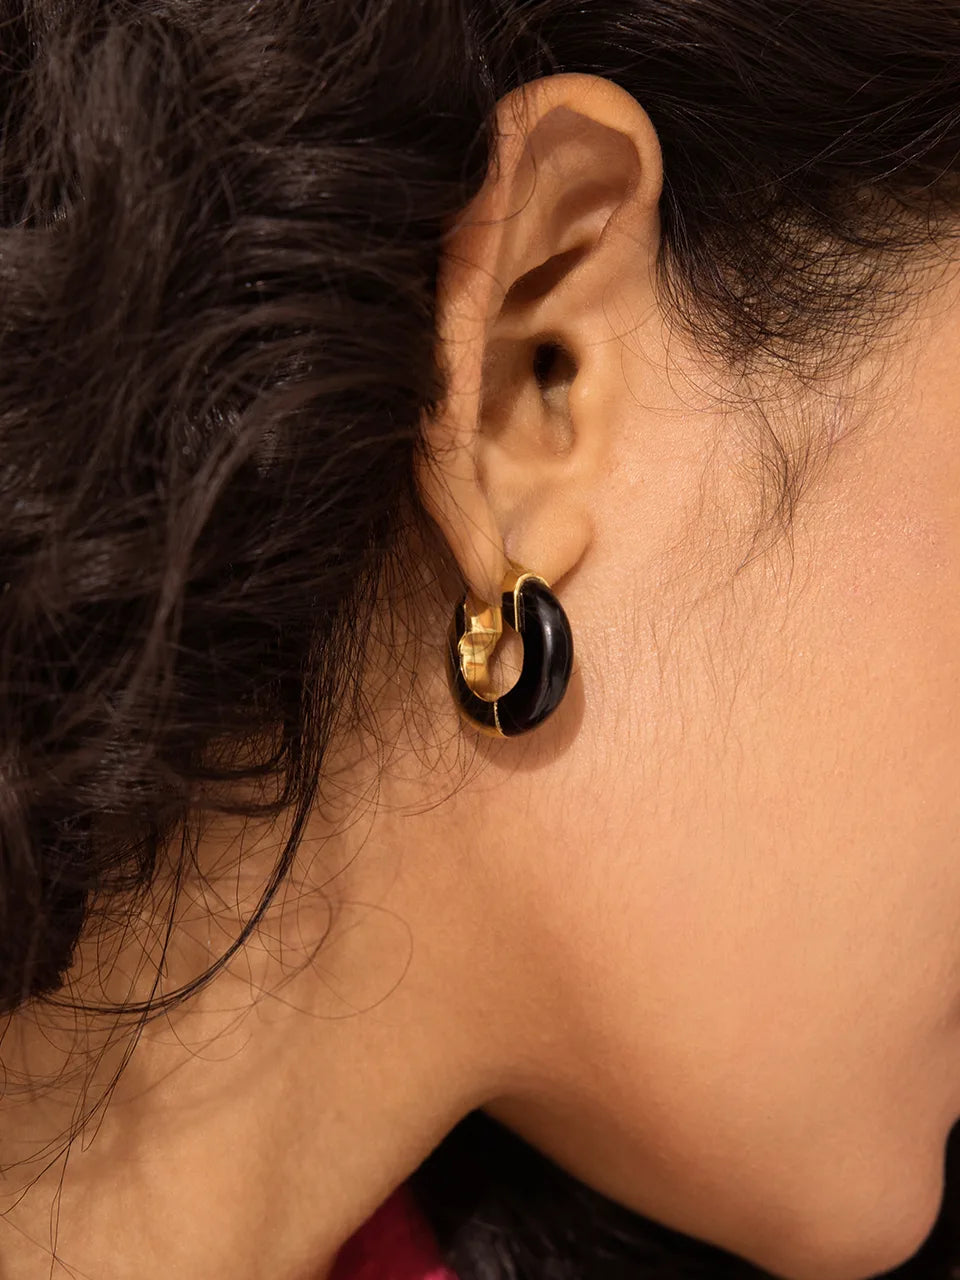 Gemstone Two-Tone Hoop Earrings